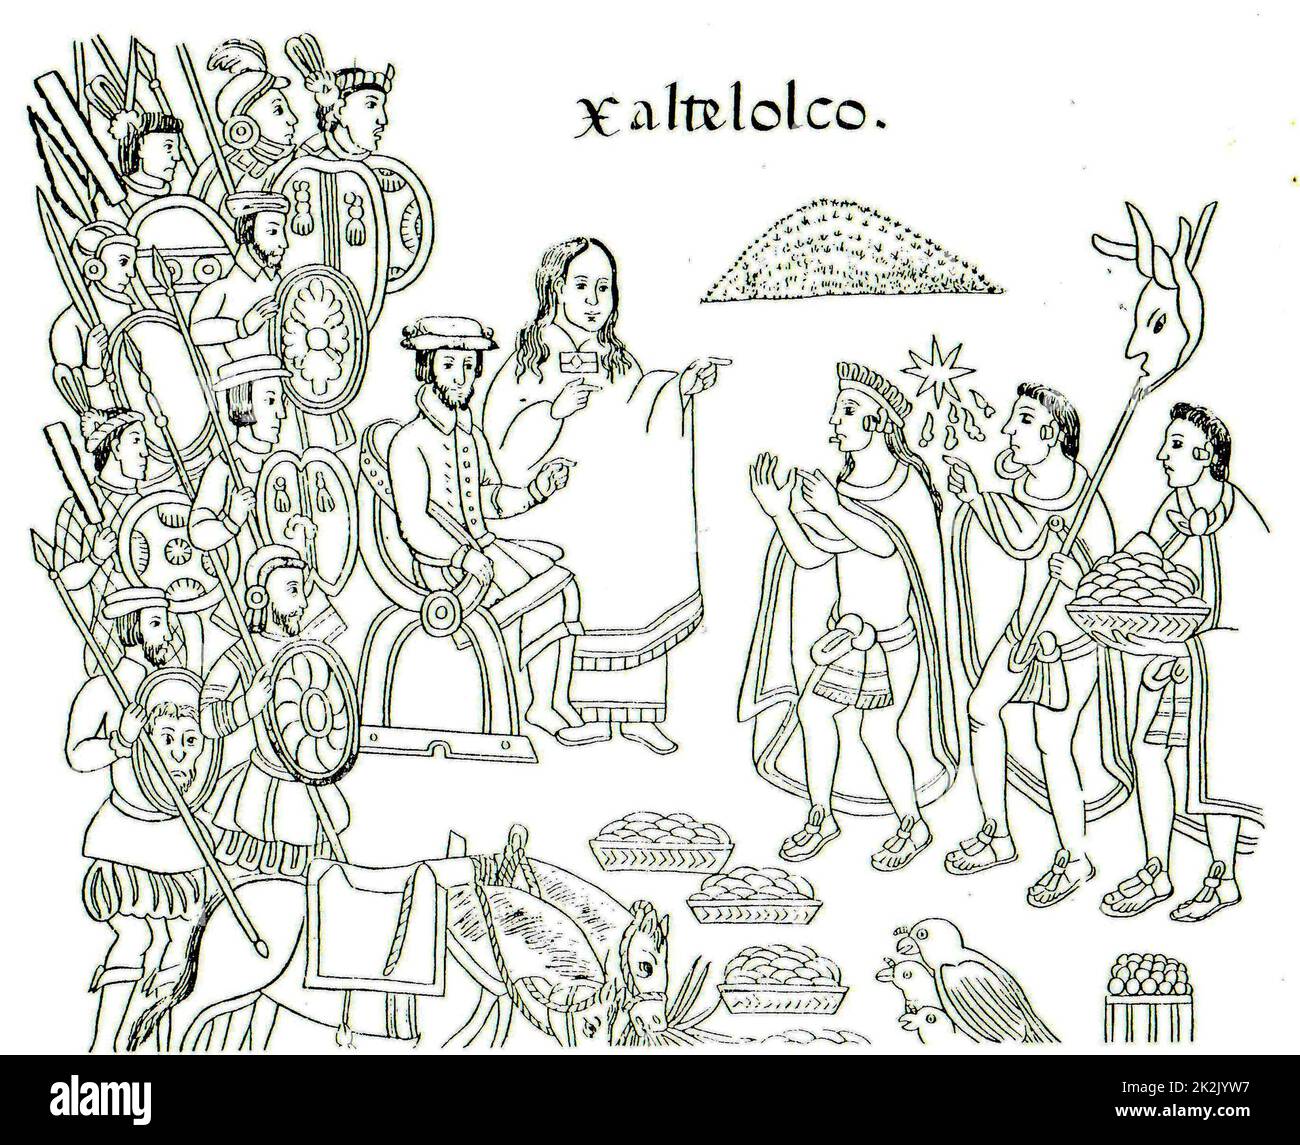 Zeichnung aus Diego Munoz Camargo's Geschichte von Tlaxcala (Lienzo Tlaxcala), c. 1585, zeigt La Malinche und Hernán Cortés. Stockfoto